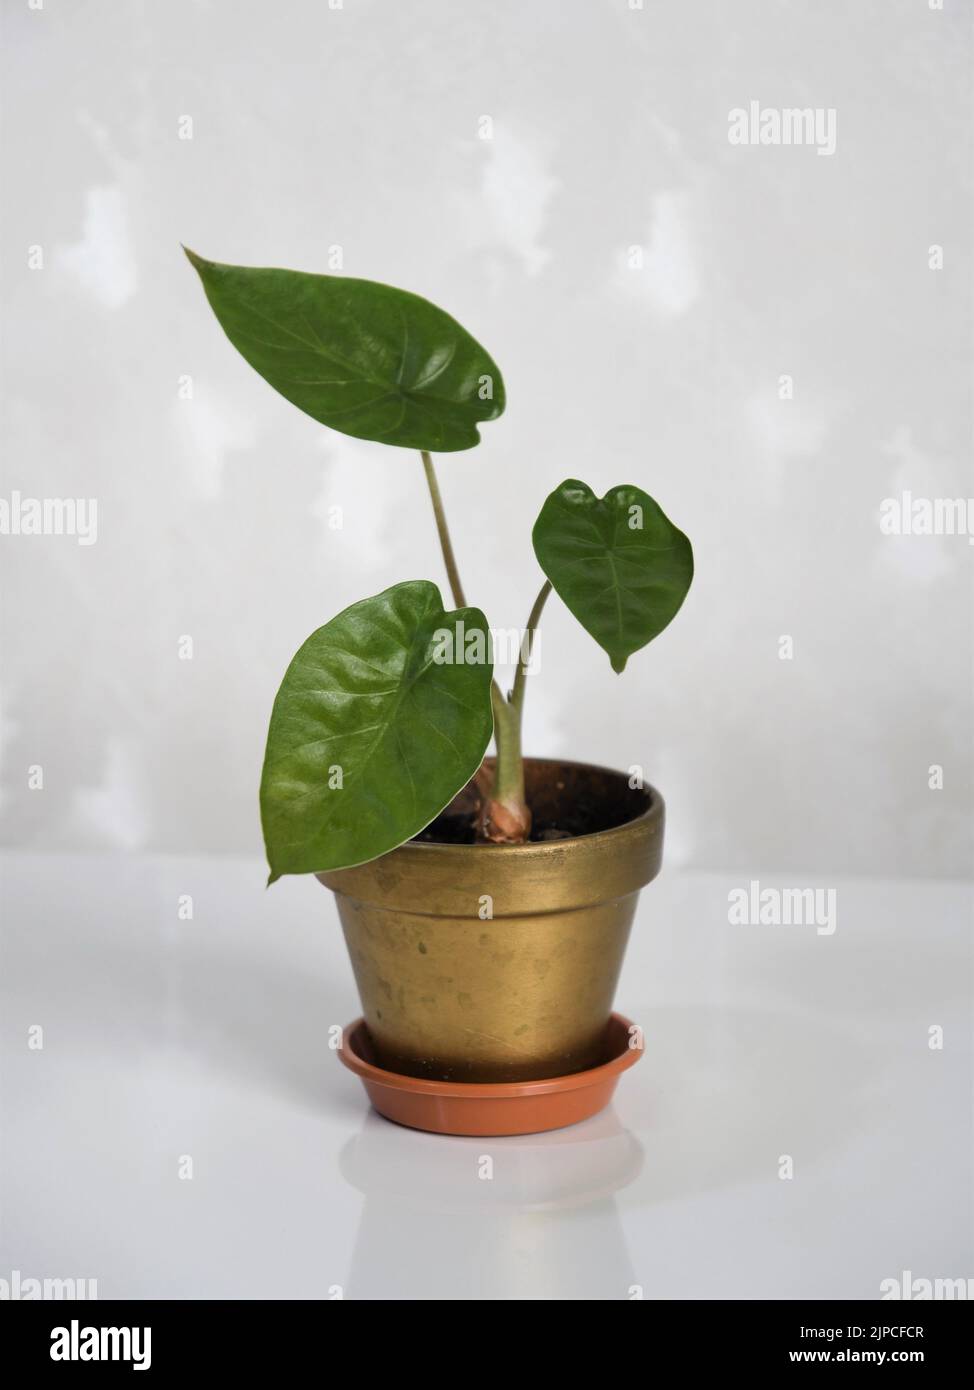 Alocasia wentii Zimmerpflanze, allgemein bekannt als Elefantenohrpflanze, in einem Goldtopf. Isoliert vor weißem Hintergrund. Hochformat. Stockfoto